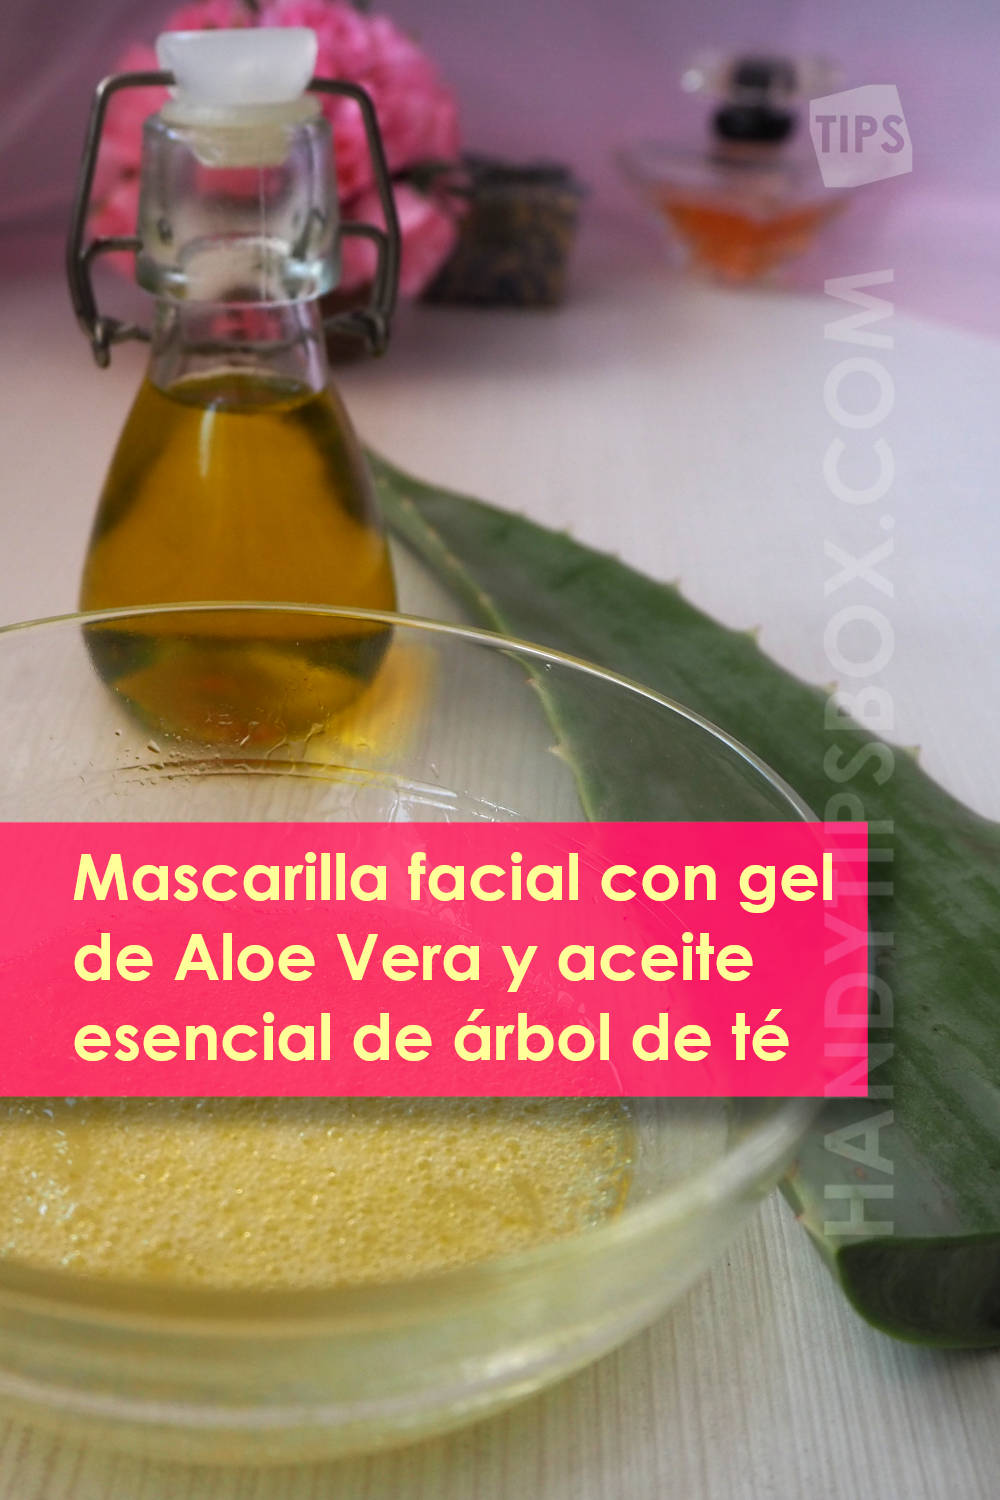 Mascarilla cosmética para pieles grasas con gel de Aloe Vera y aceite esencial de árbol de té. Mascarilla lista para usar, ingredientes. Imagen vertical.